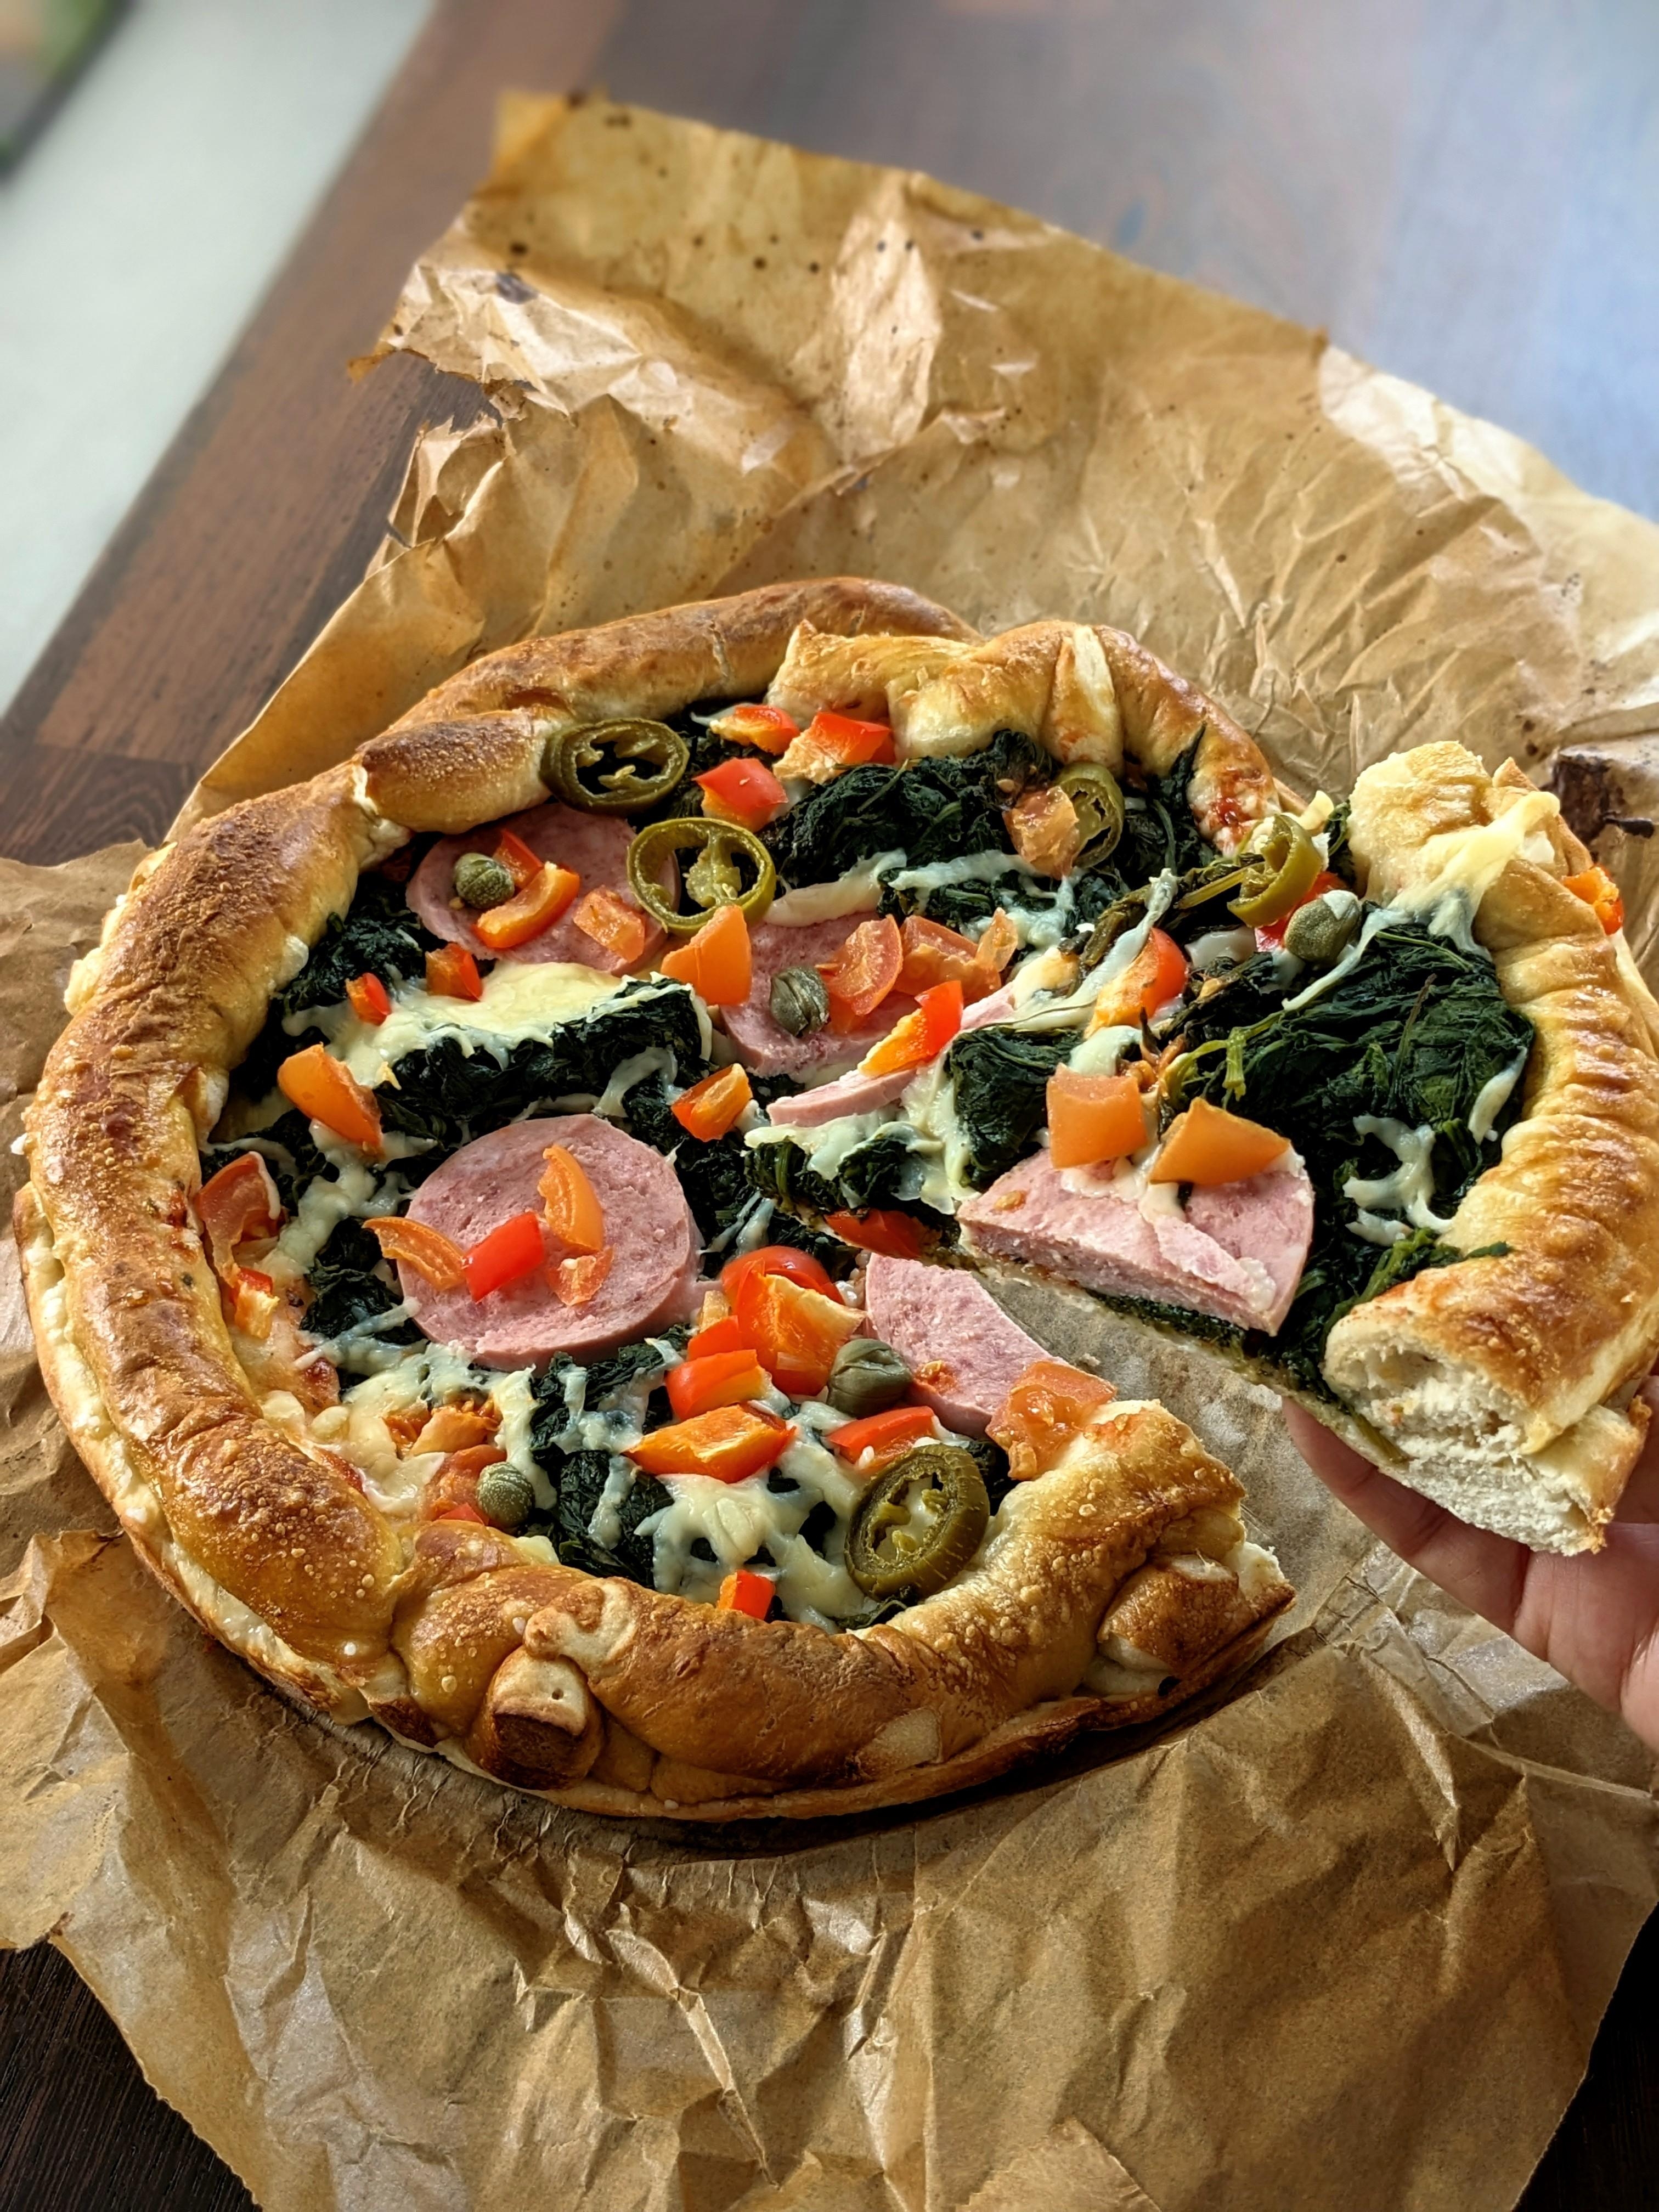 Party-Brezel-Pizza 🥨🍕🎉
Ganz schnell gemacht.
*Unter Rubrik "Rezepte" zu finden 
#party #pizza #food #foodie #brezel

